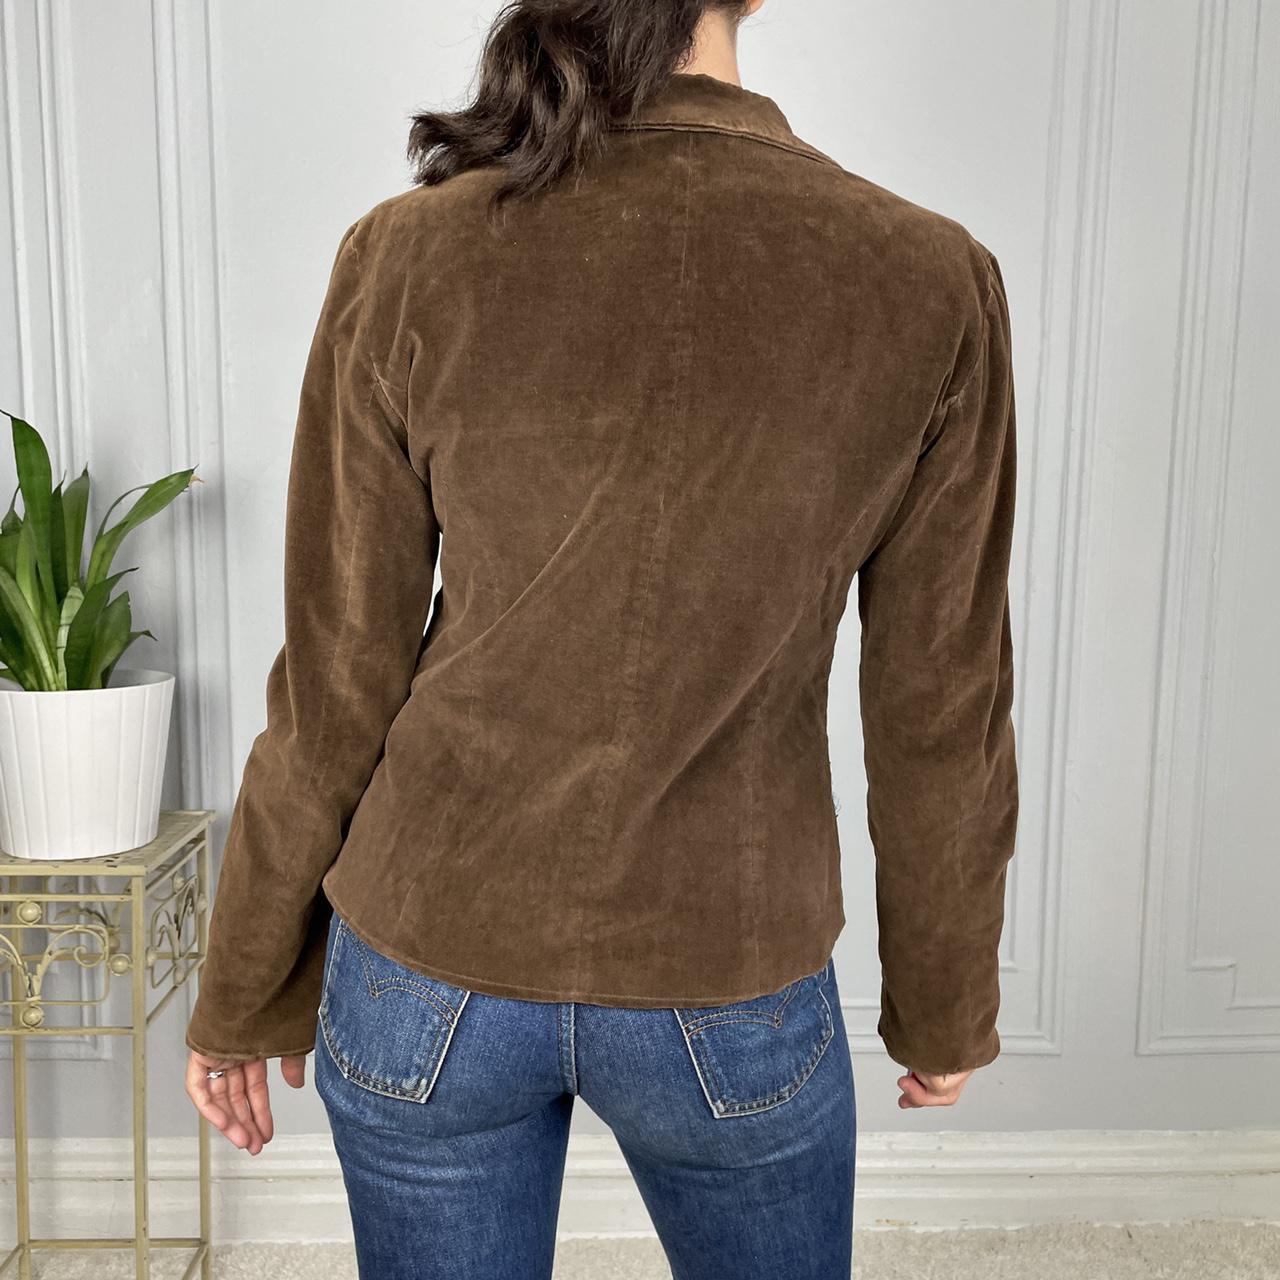 Product Image 4 - Y2K Brown Blazer Jacket

Cute vintage